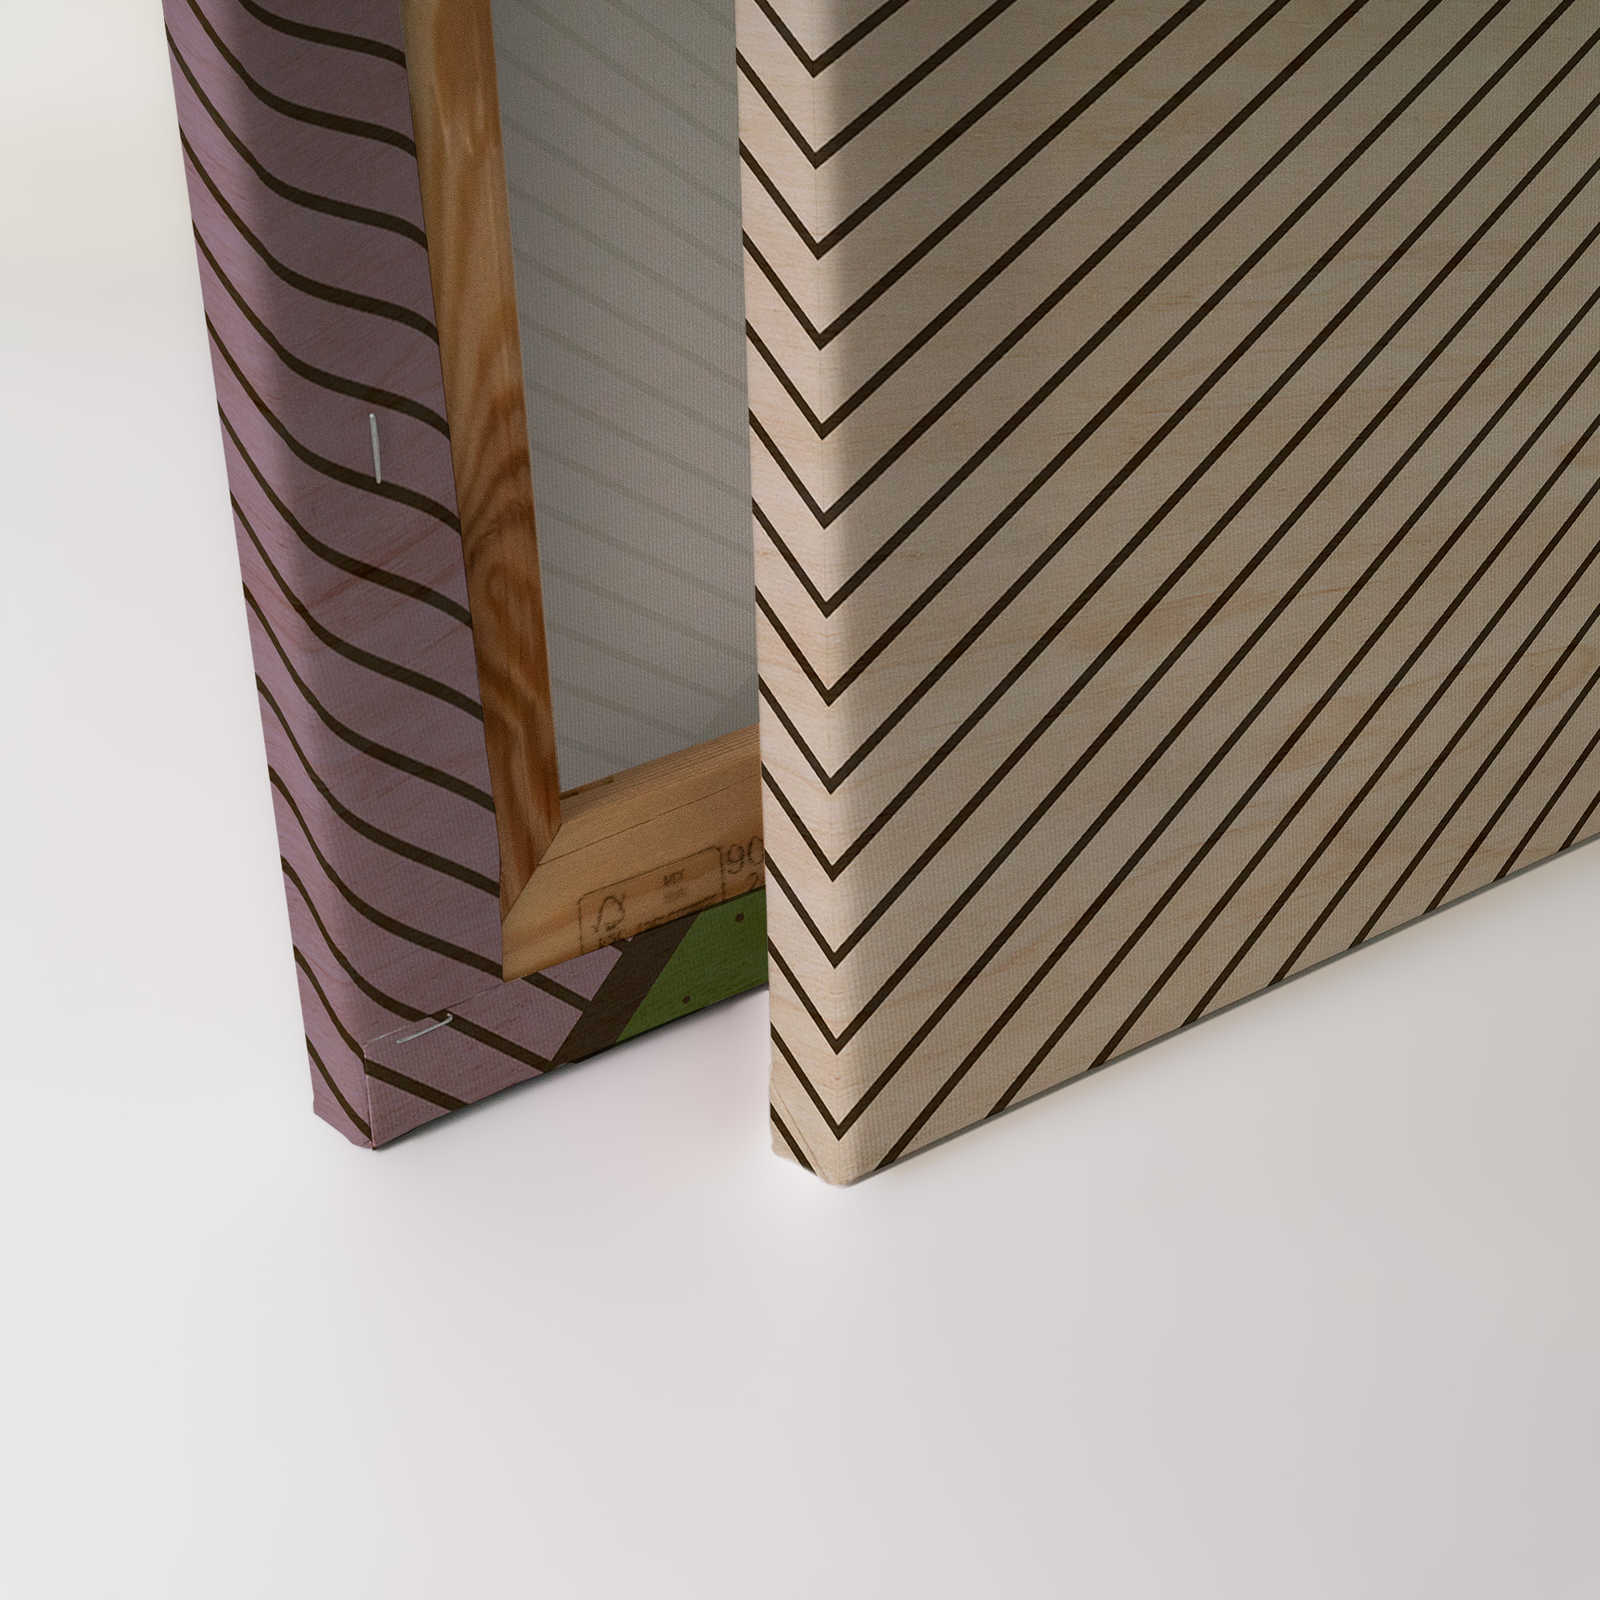             Bird gang 3 - Lienzo abstracto en estructura de madera contrachapada con zonas multicolores - 0,90 m x 0,60 m
        